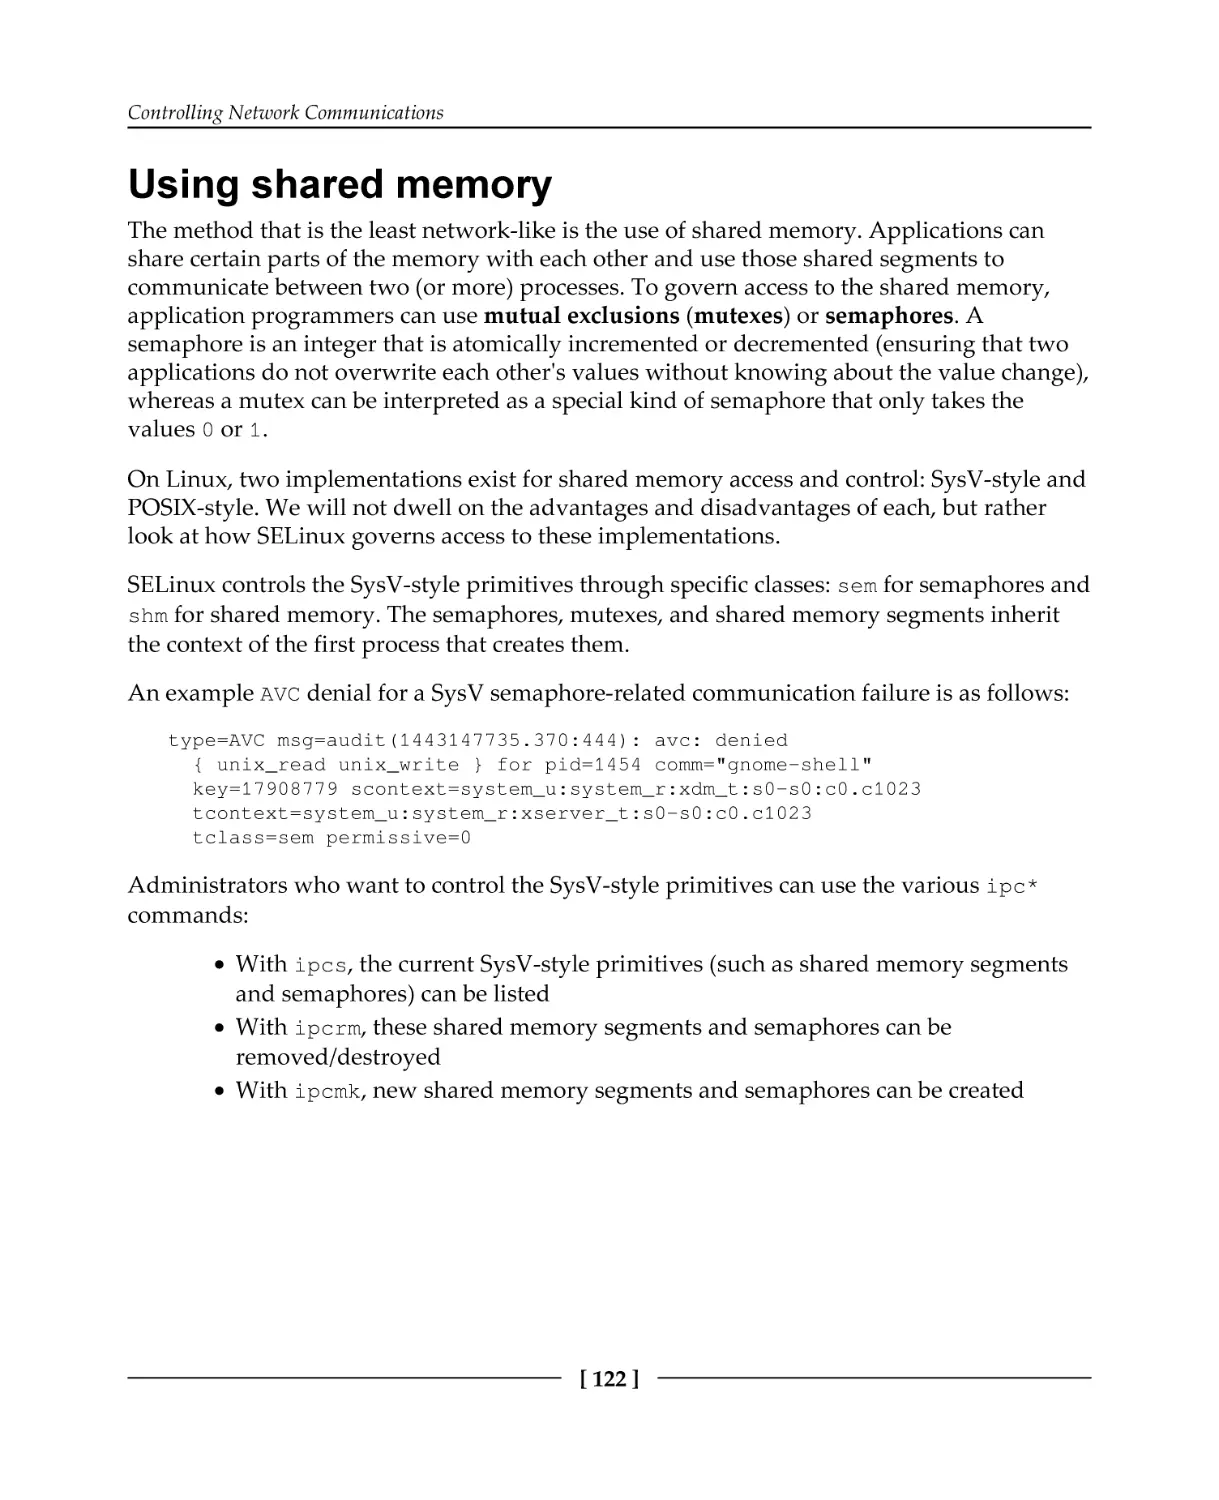 Using shared memory